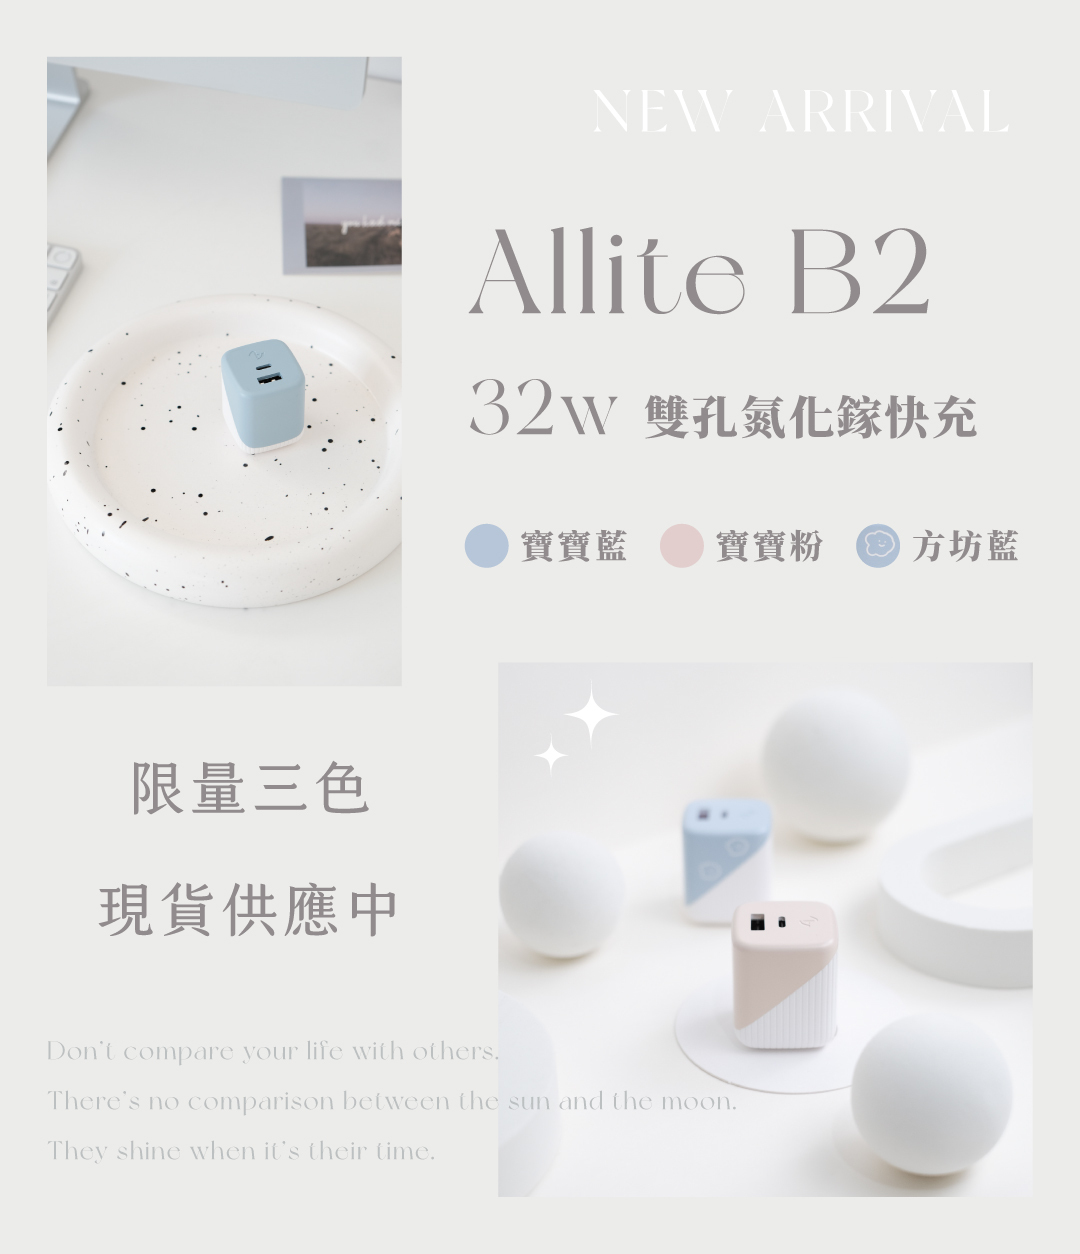 Allite B2